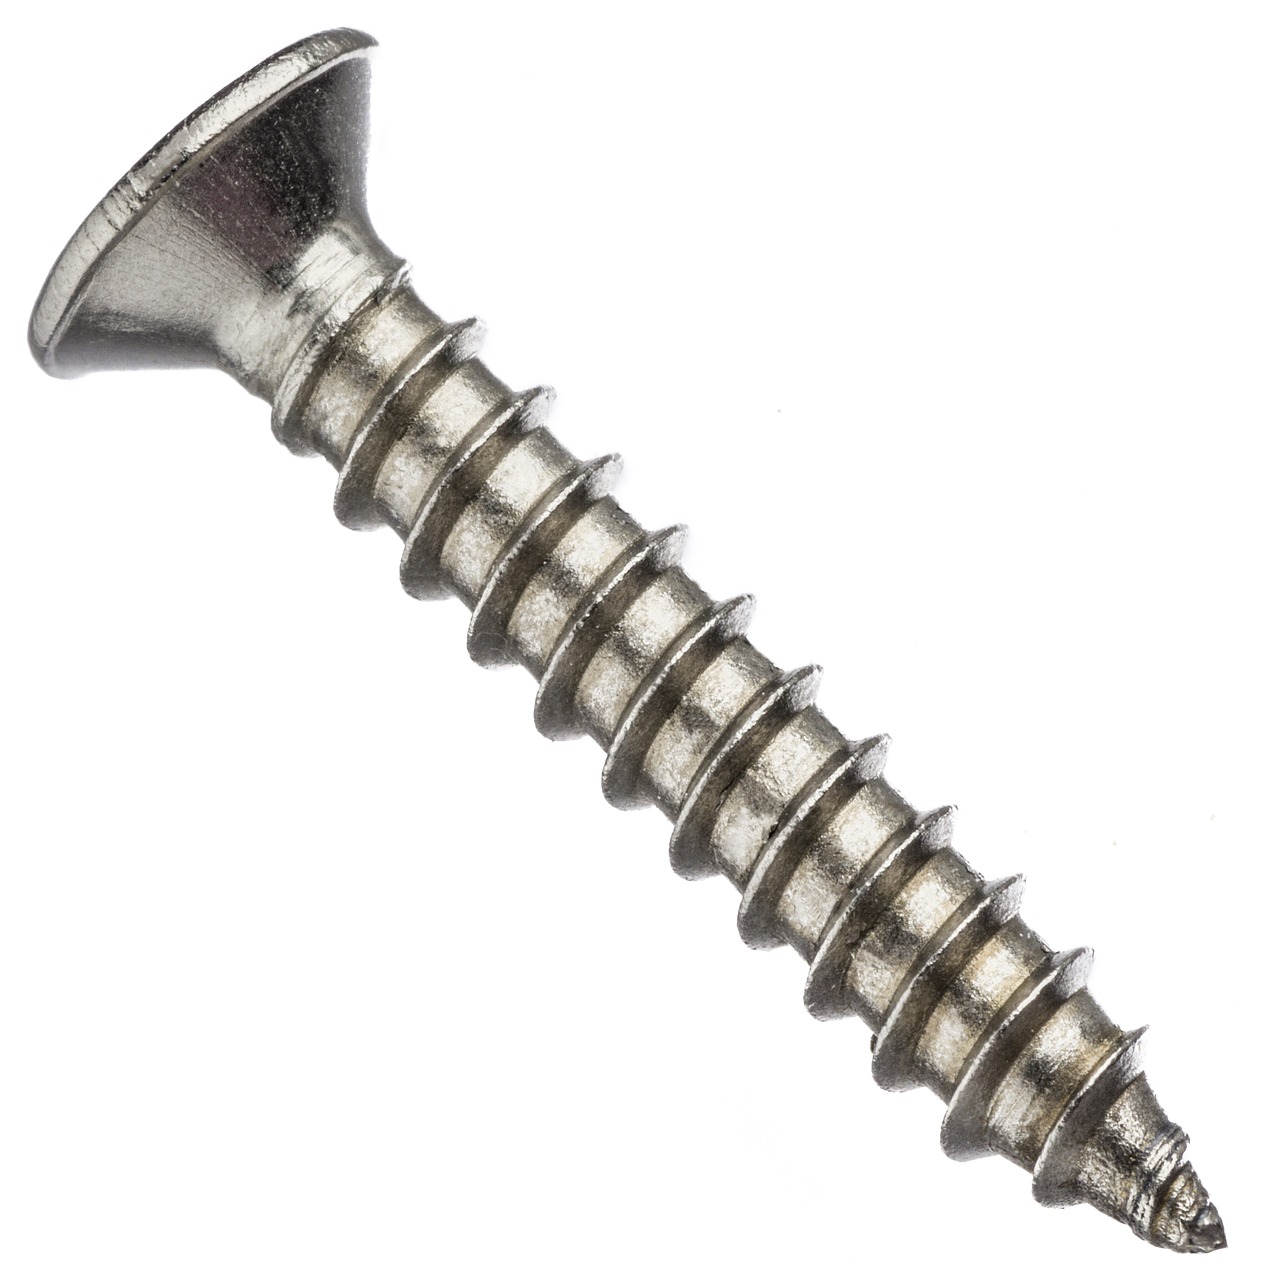 screw nail hardware free photo